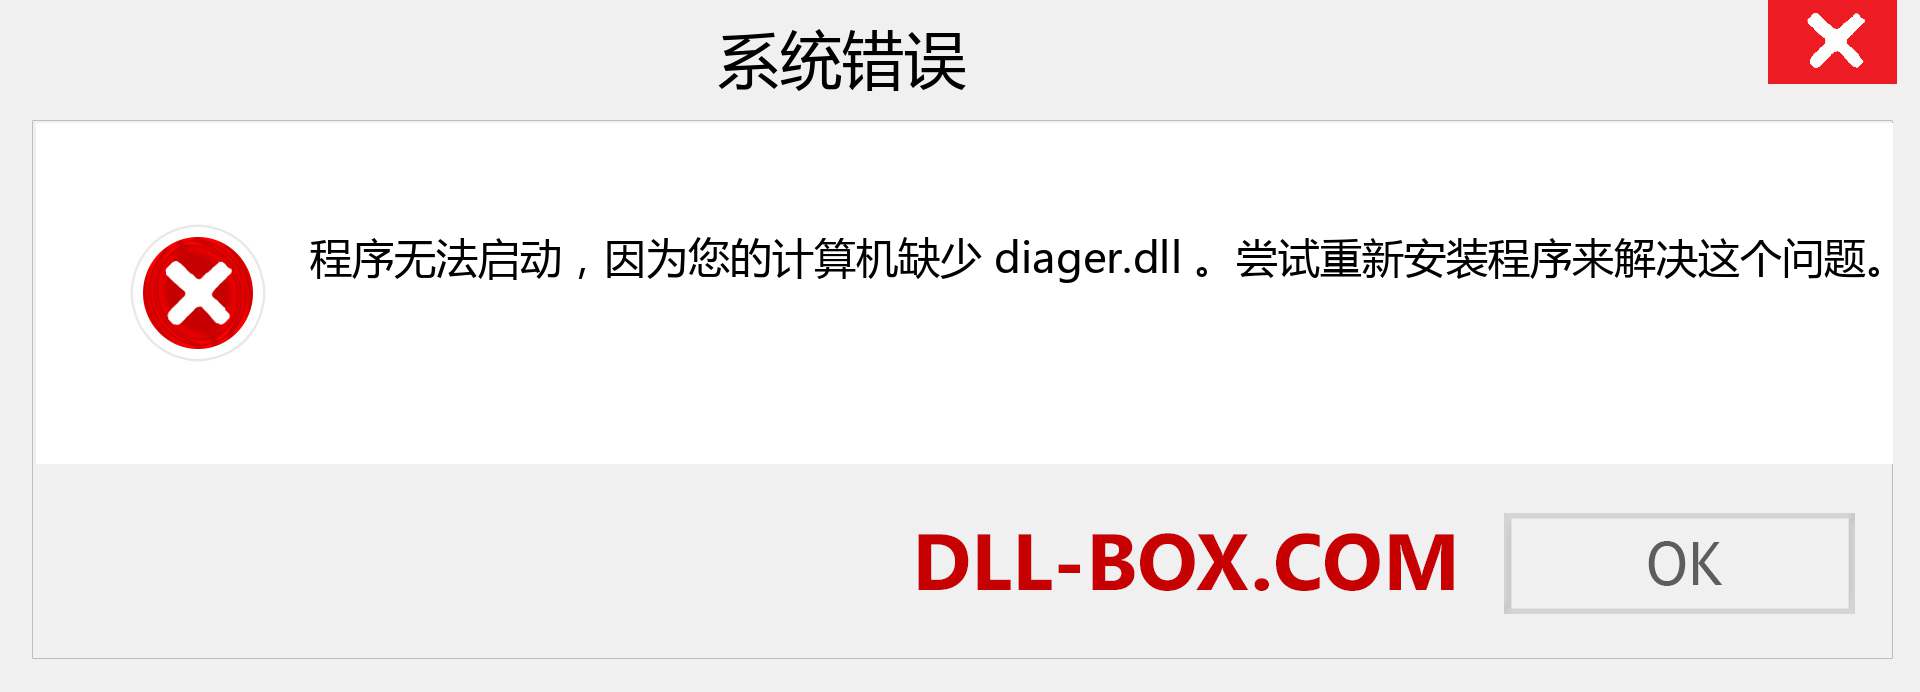 diager.dll 文件丢失？。 适用于 Windows 7、8、10 的下载 - 修复 Windows、照片、图像上的 diager dll 丢失错误